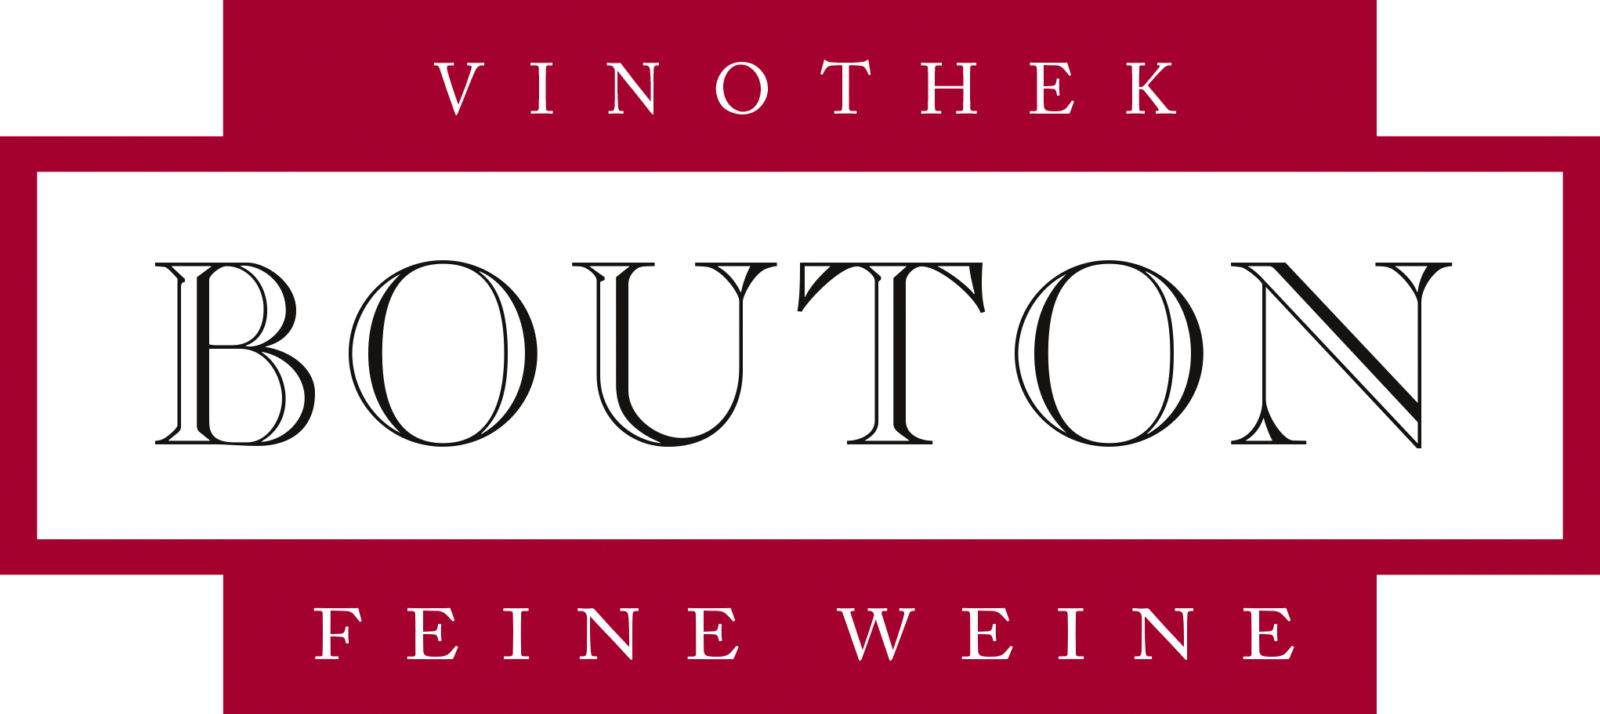 Logo Vinothek Bouton